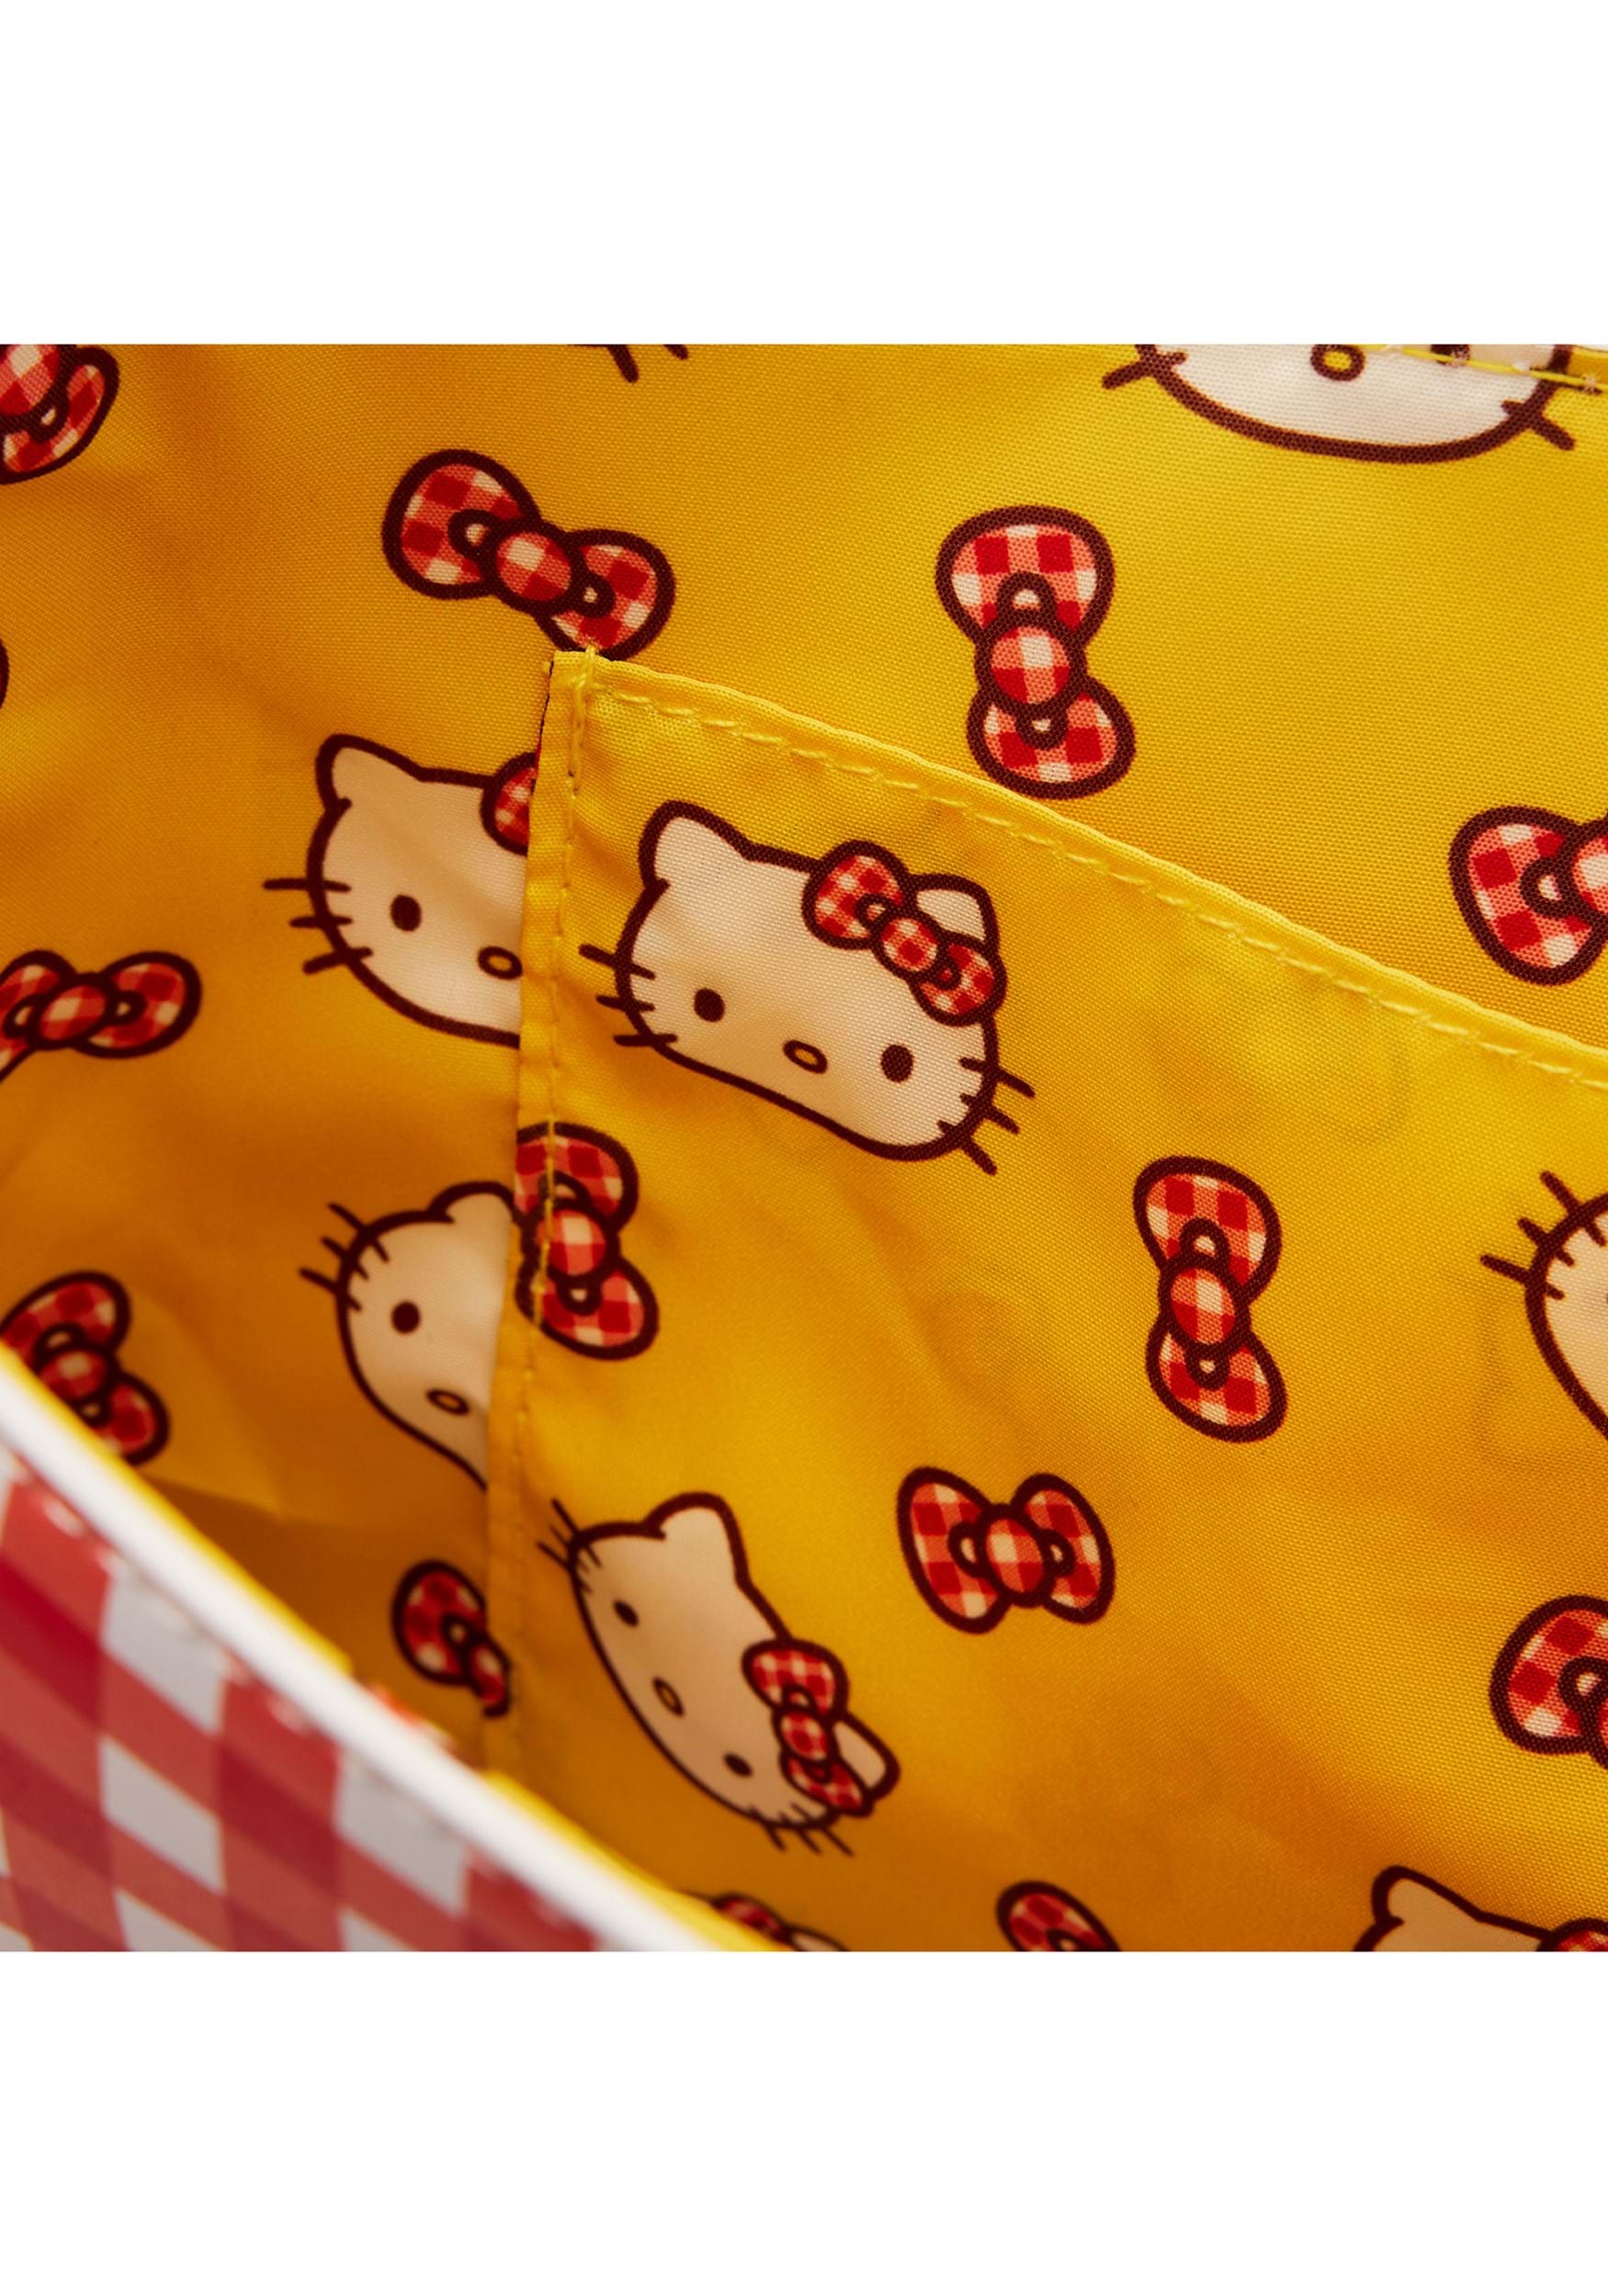 Hello Kitty 2-Way Mini Crossbody Bag